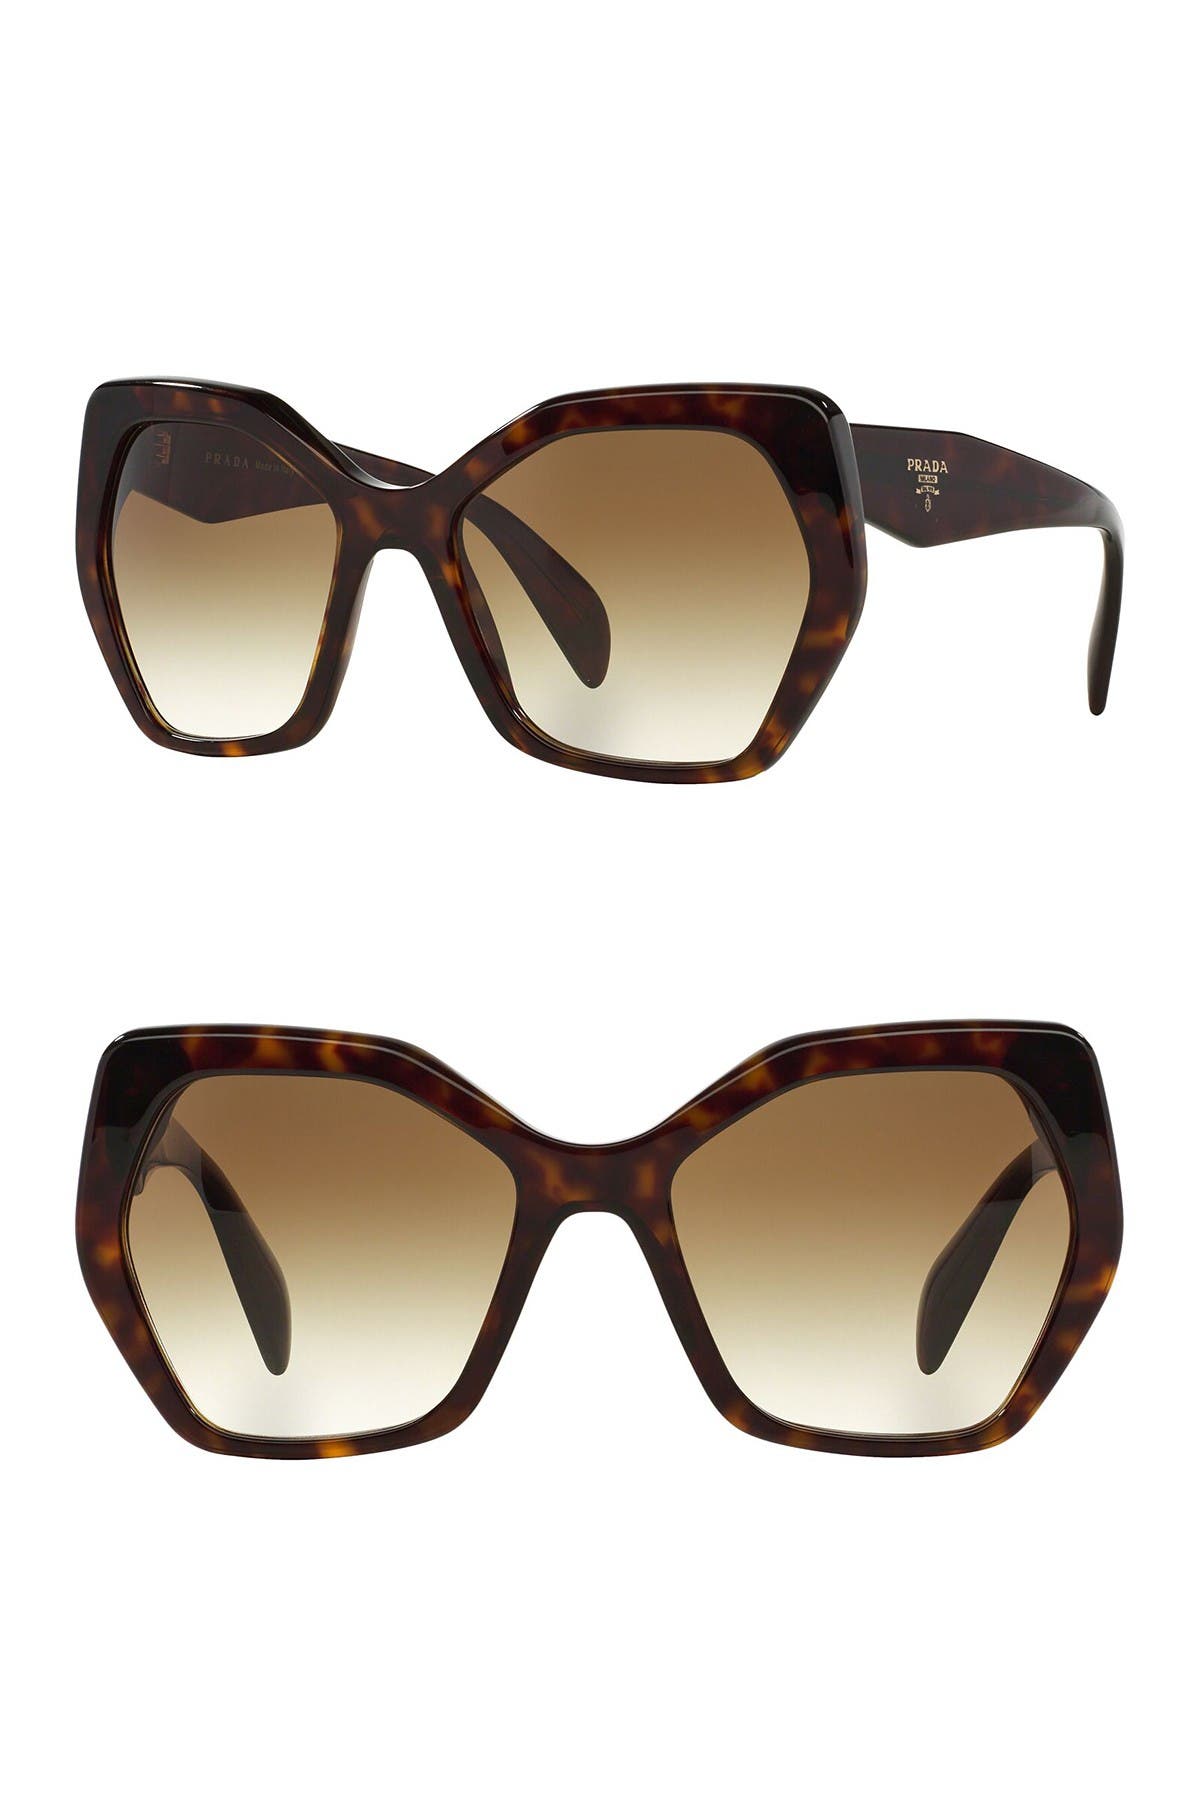 prada heritage sunglasses